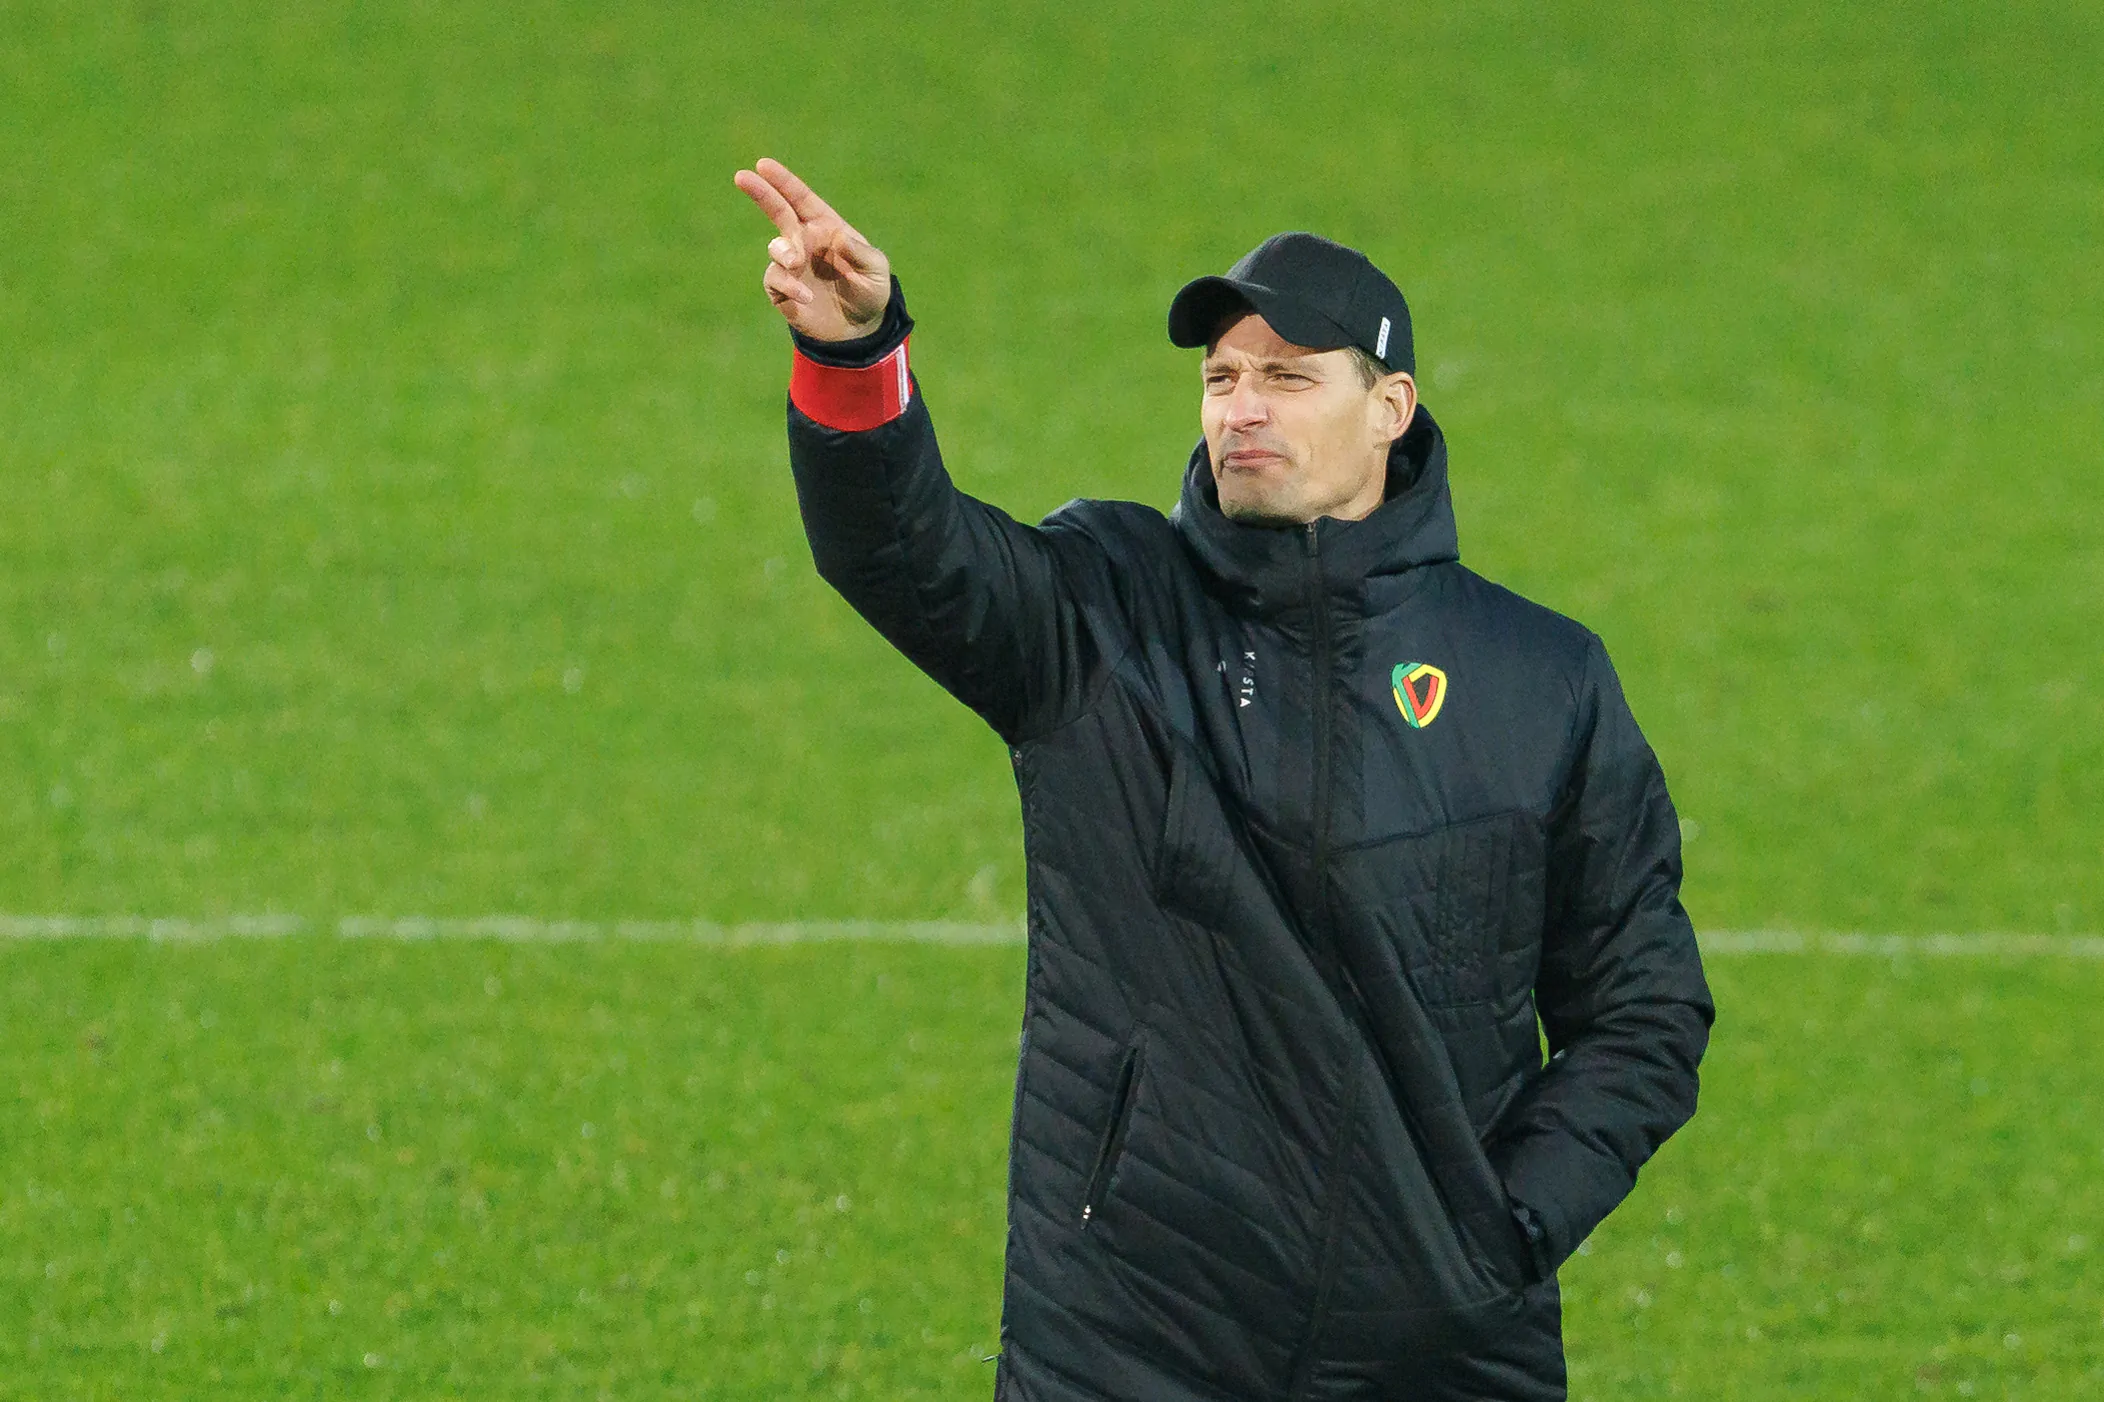 UFFICIALE – Genoa, arriva a sorpresa l’annuncio del nuovo allenatore!